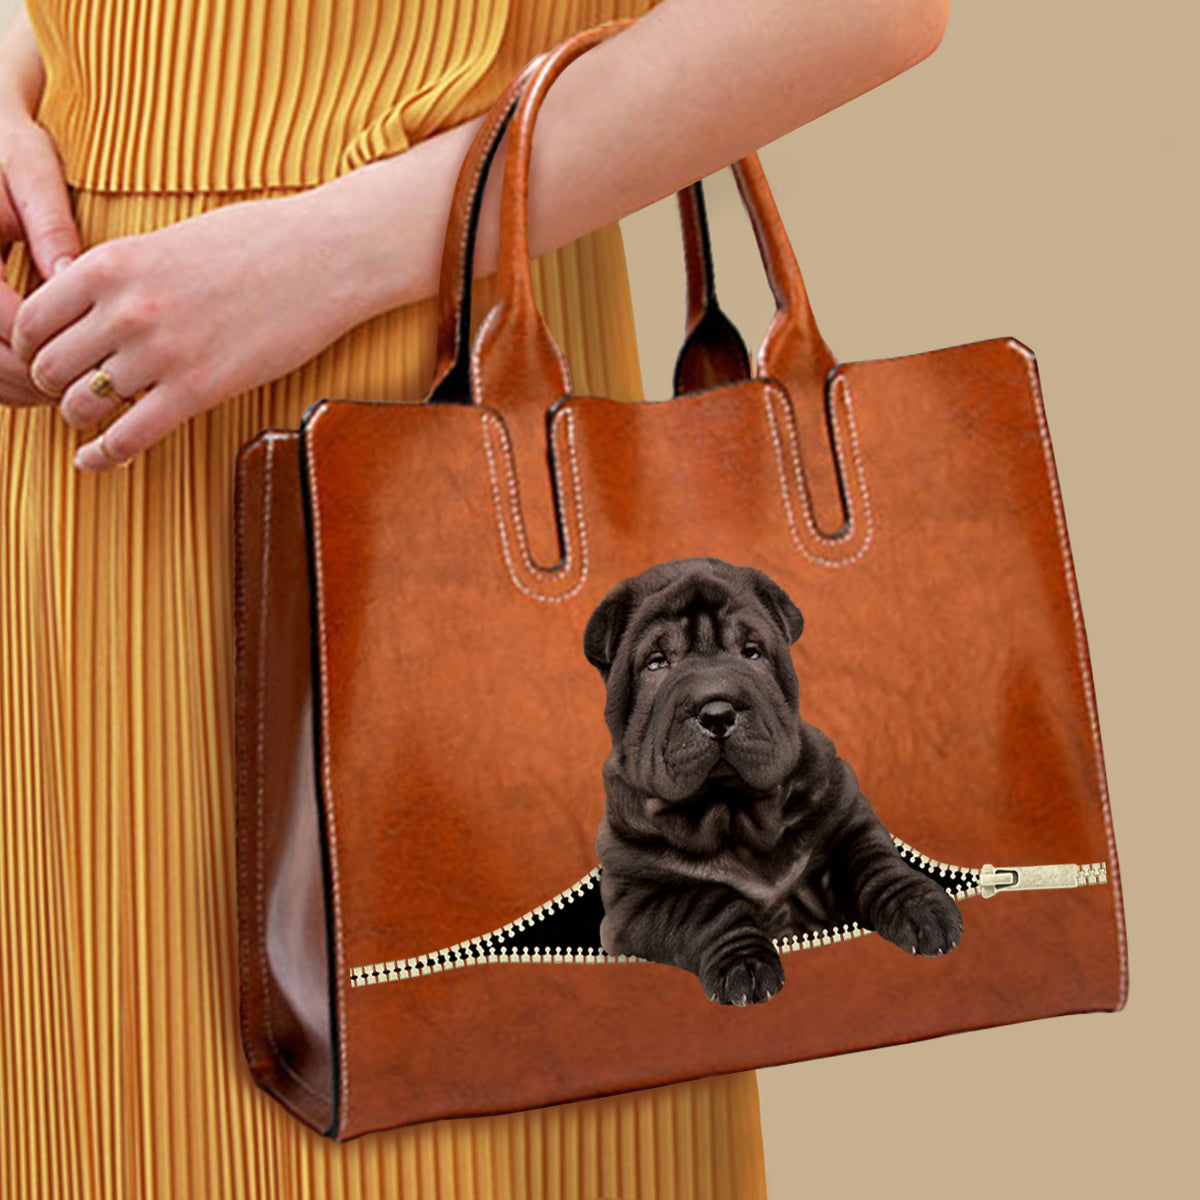 Votre meilleur compagnon - Shar Pei Luxury Handbag V2